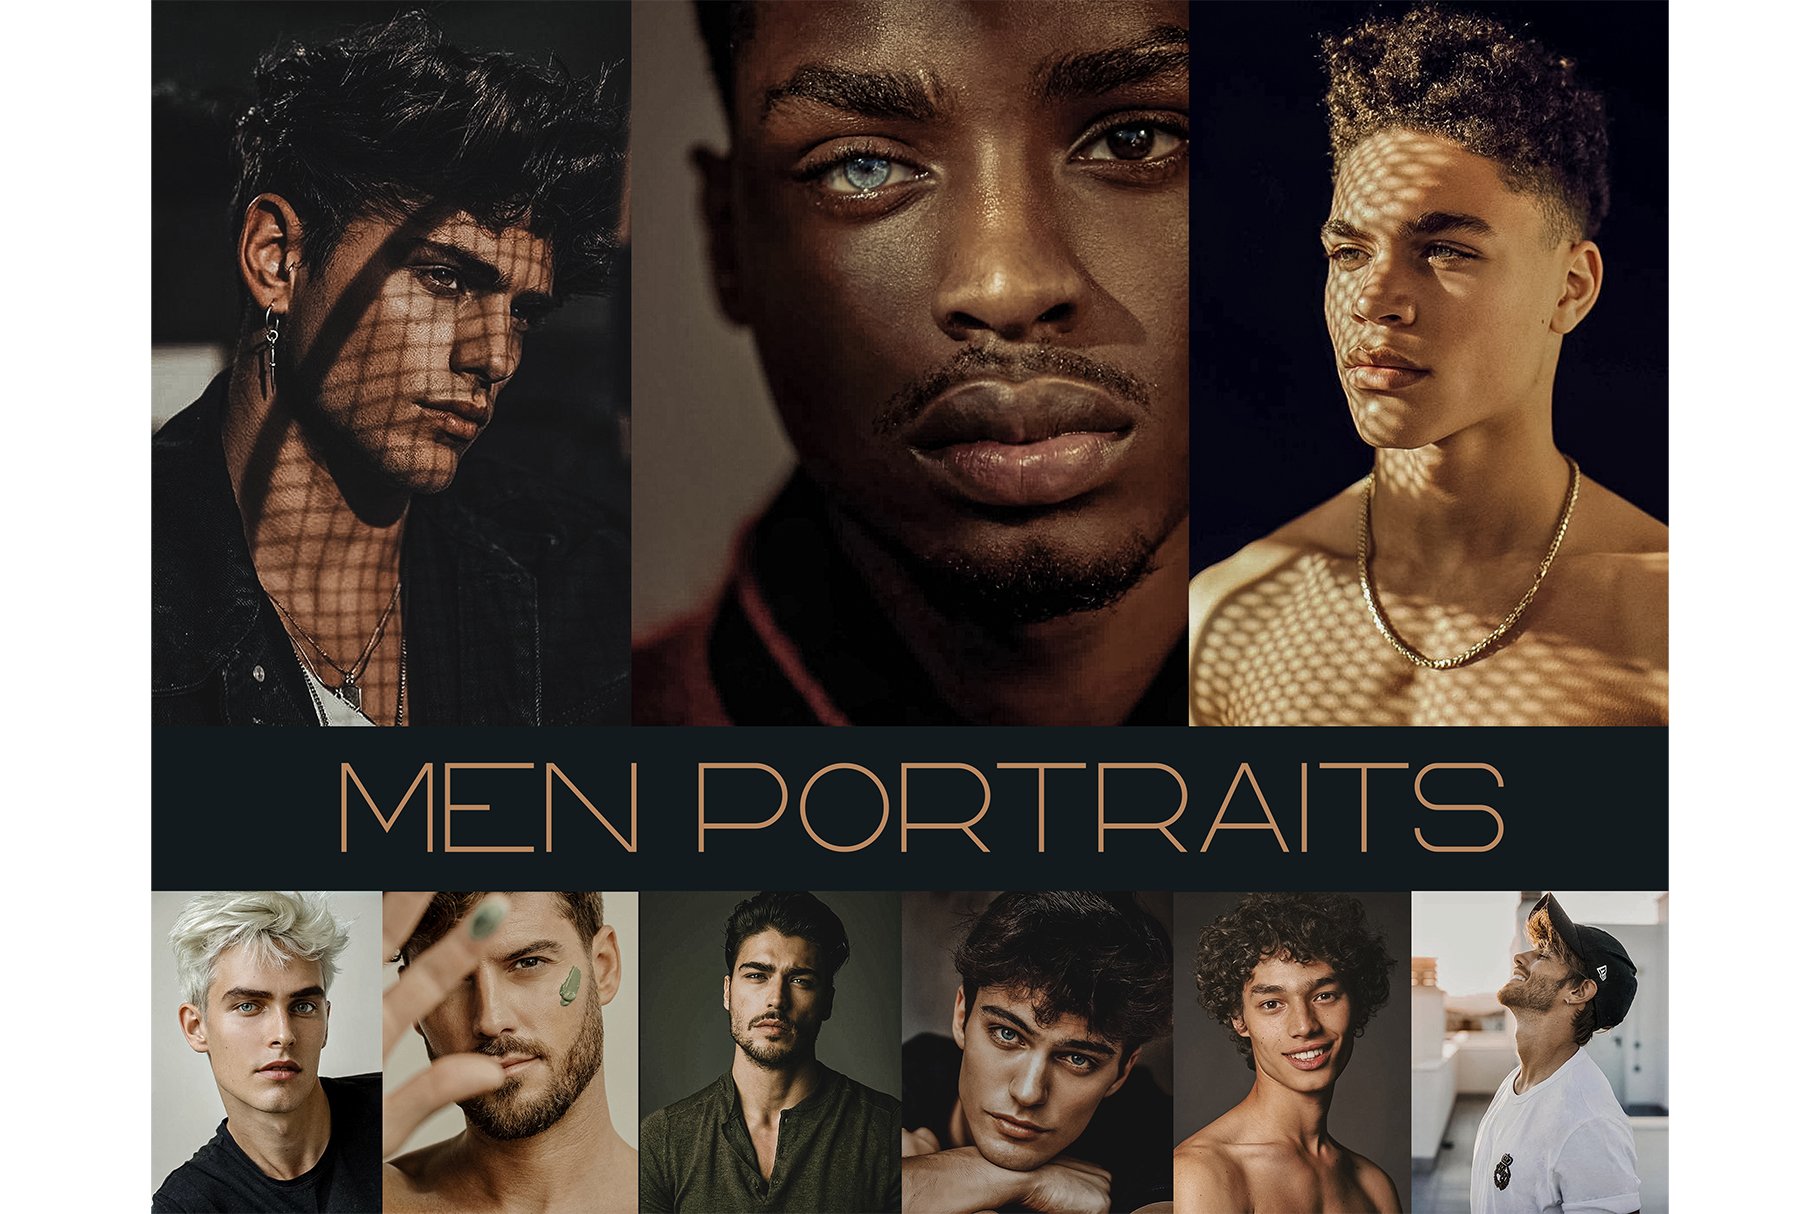 15 MEN PORTRAITS Lightroom Presetscover image.